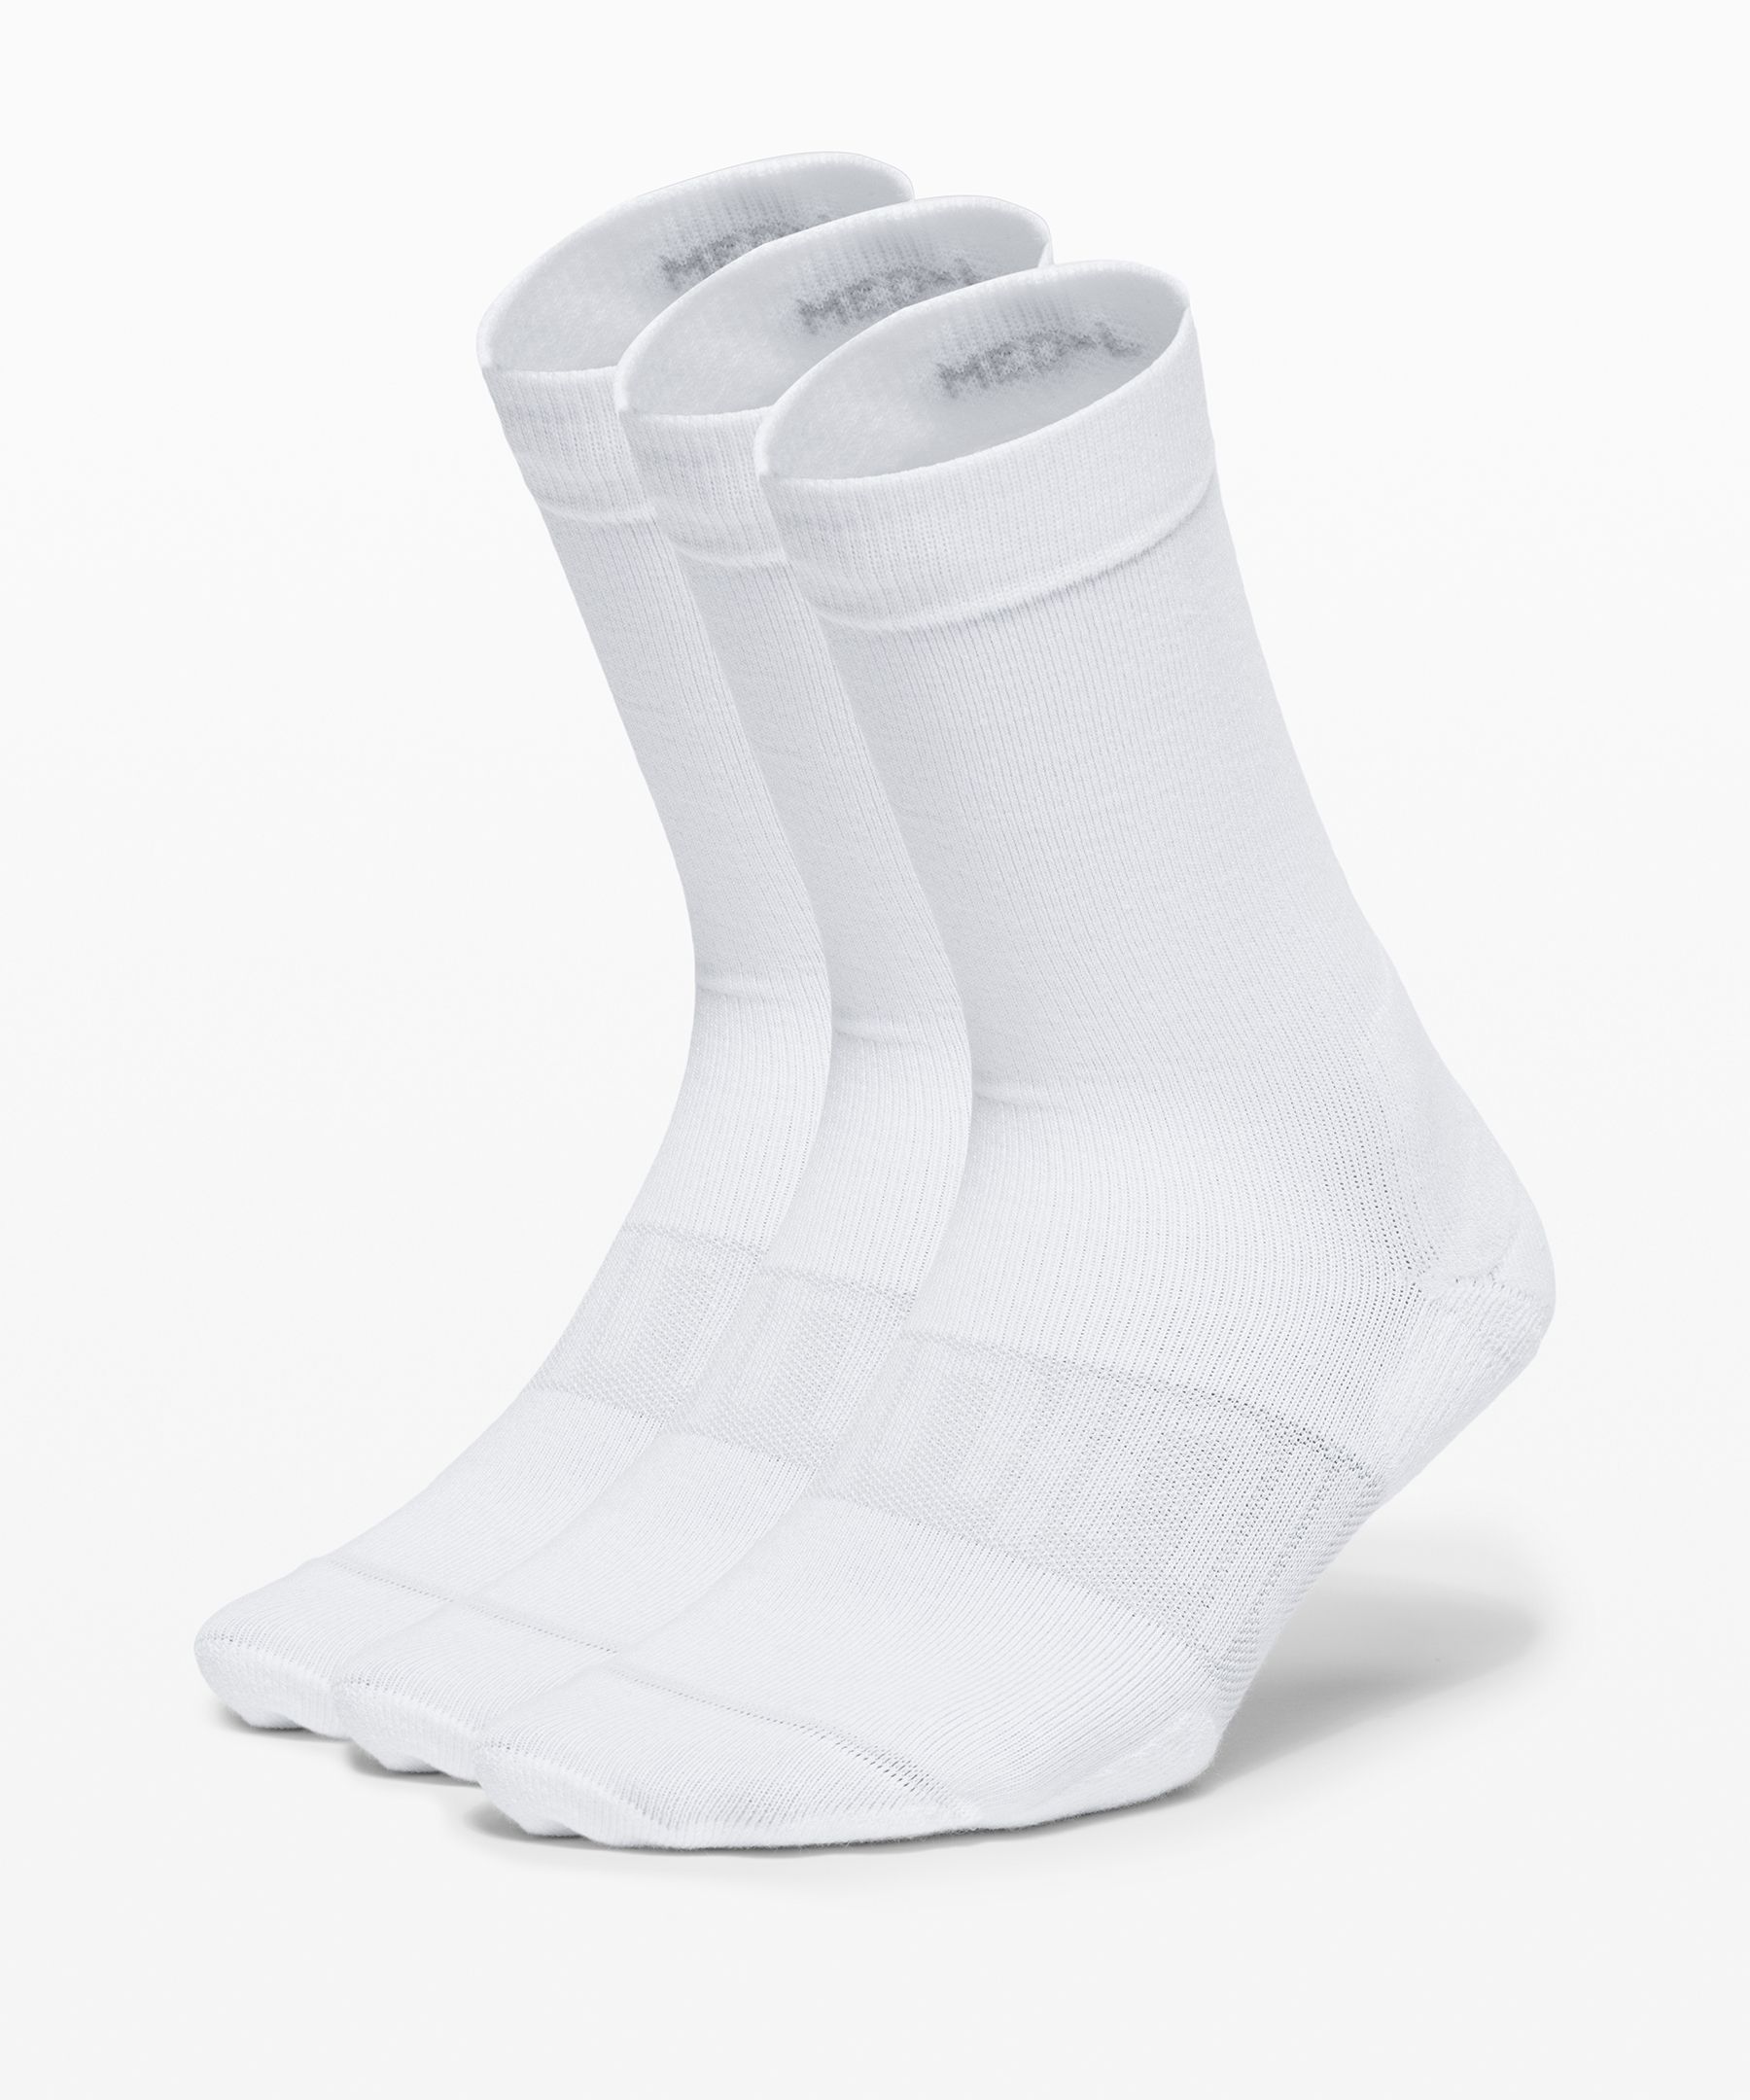 Lululemon Daily Stride Crew Socks 3 Pack In White